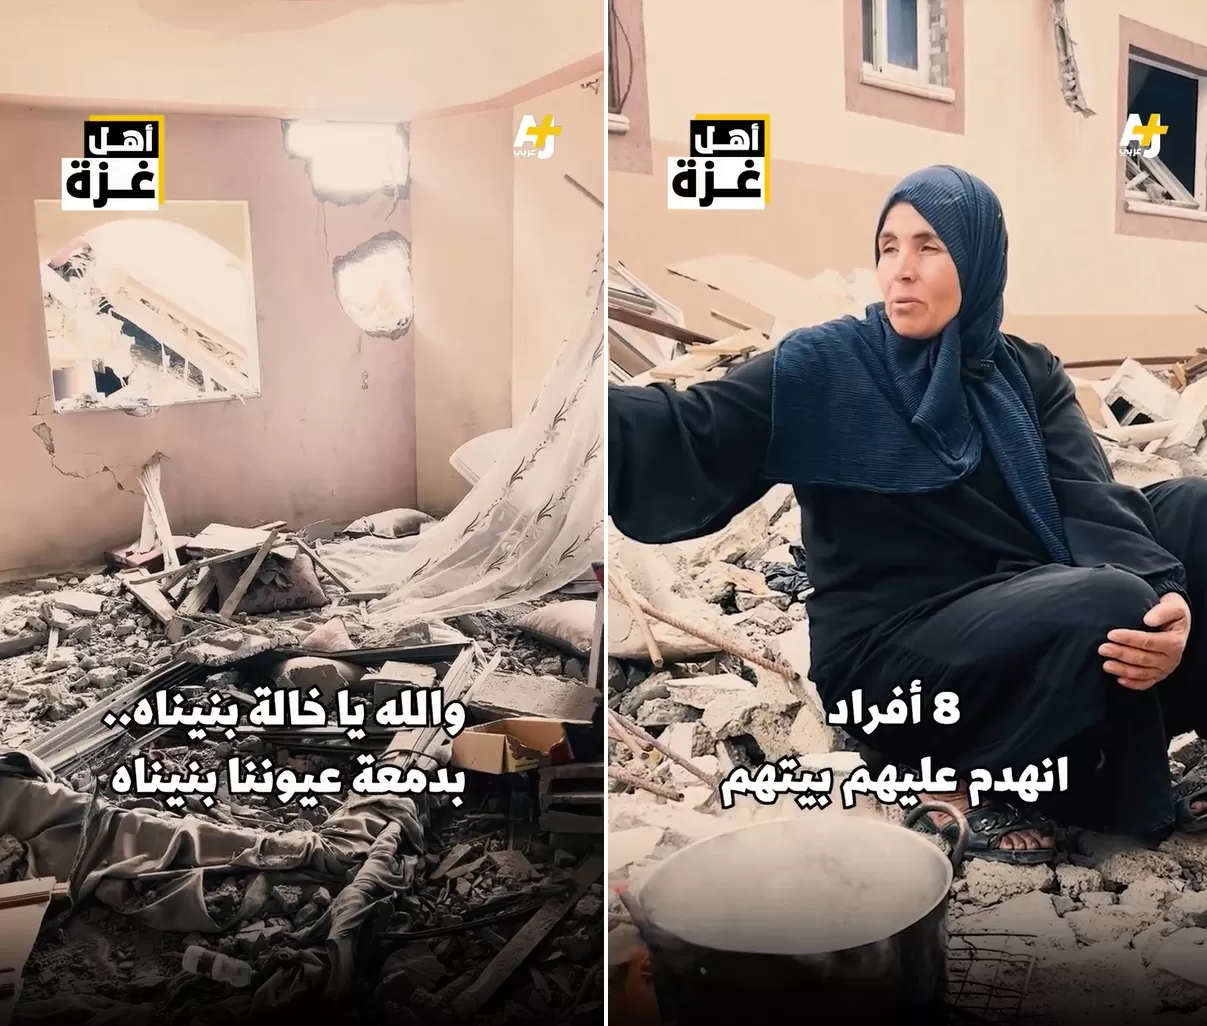 فلسطينية تتفقد منزلها الذي دمره الاحتلال في غزة